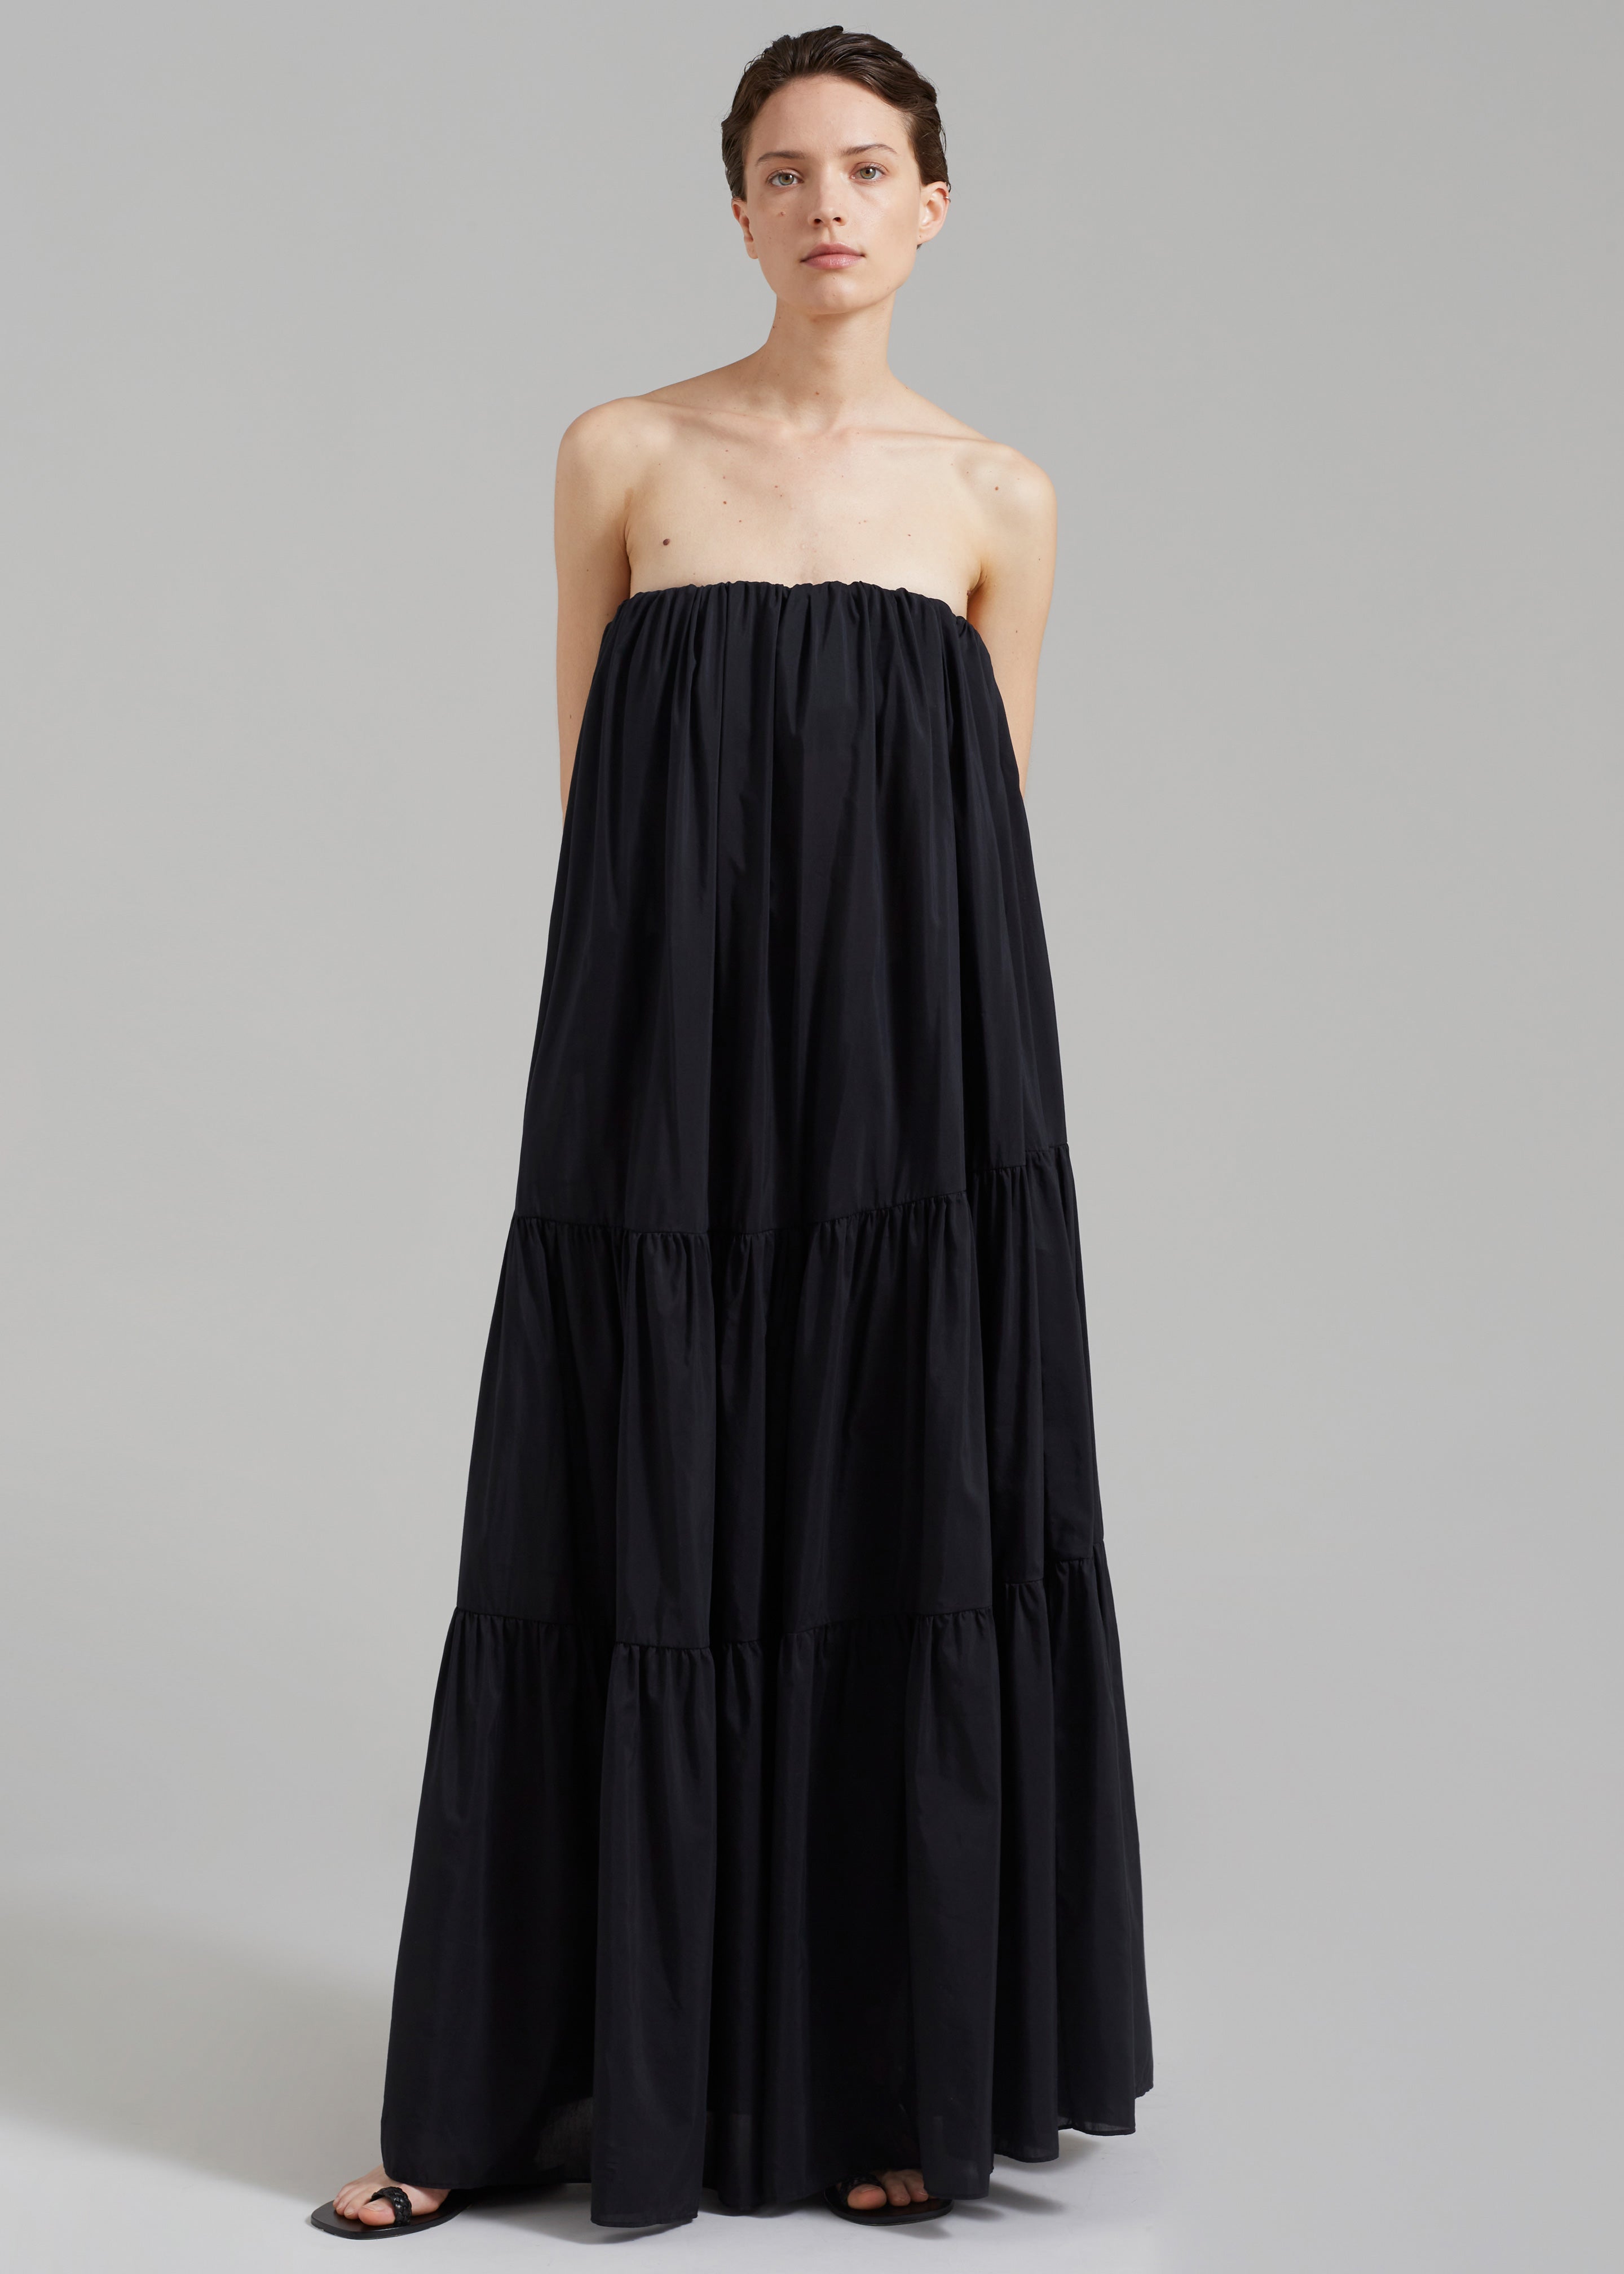 Matteau Voluminous Strapless Tiered Dress - Black - 3